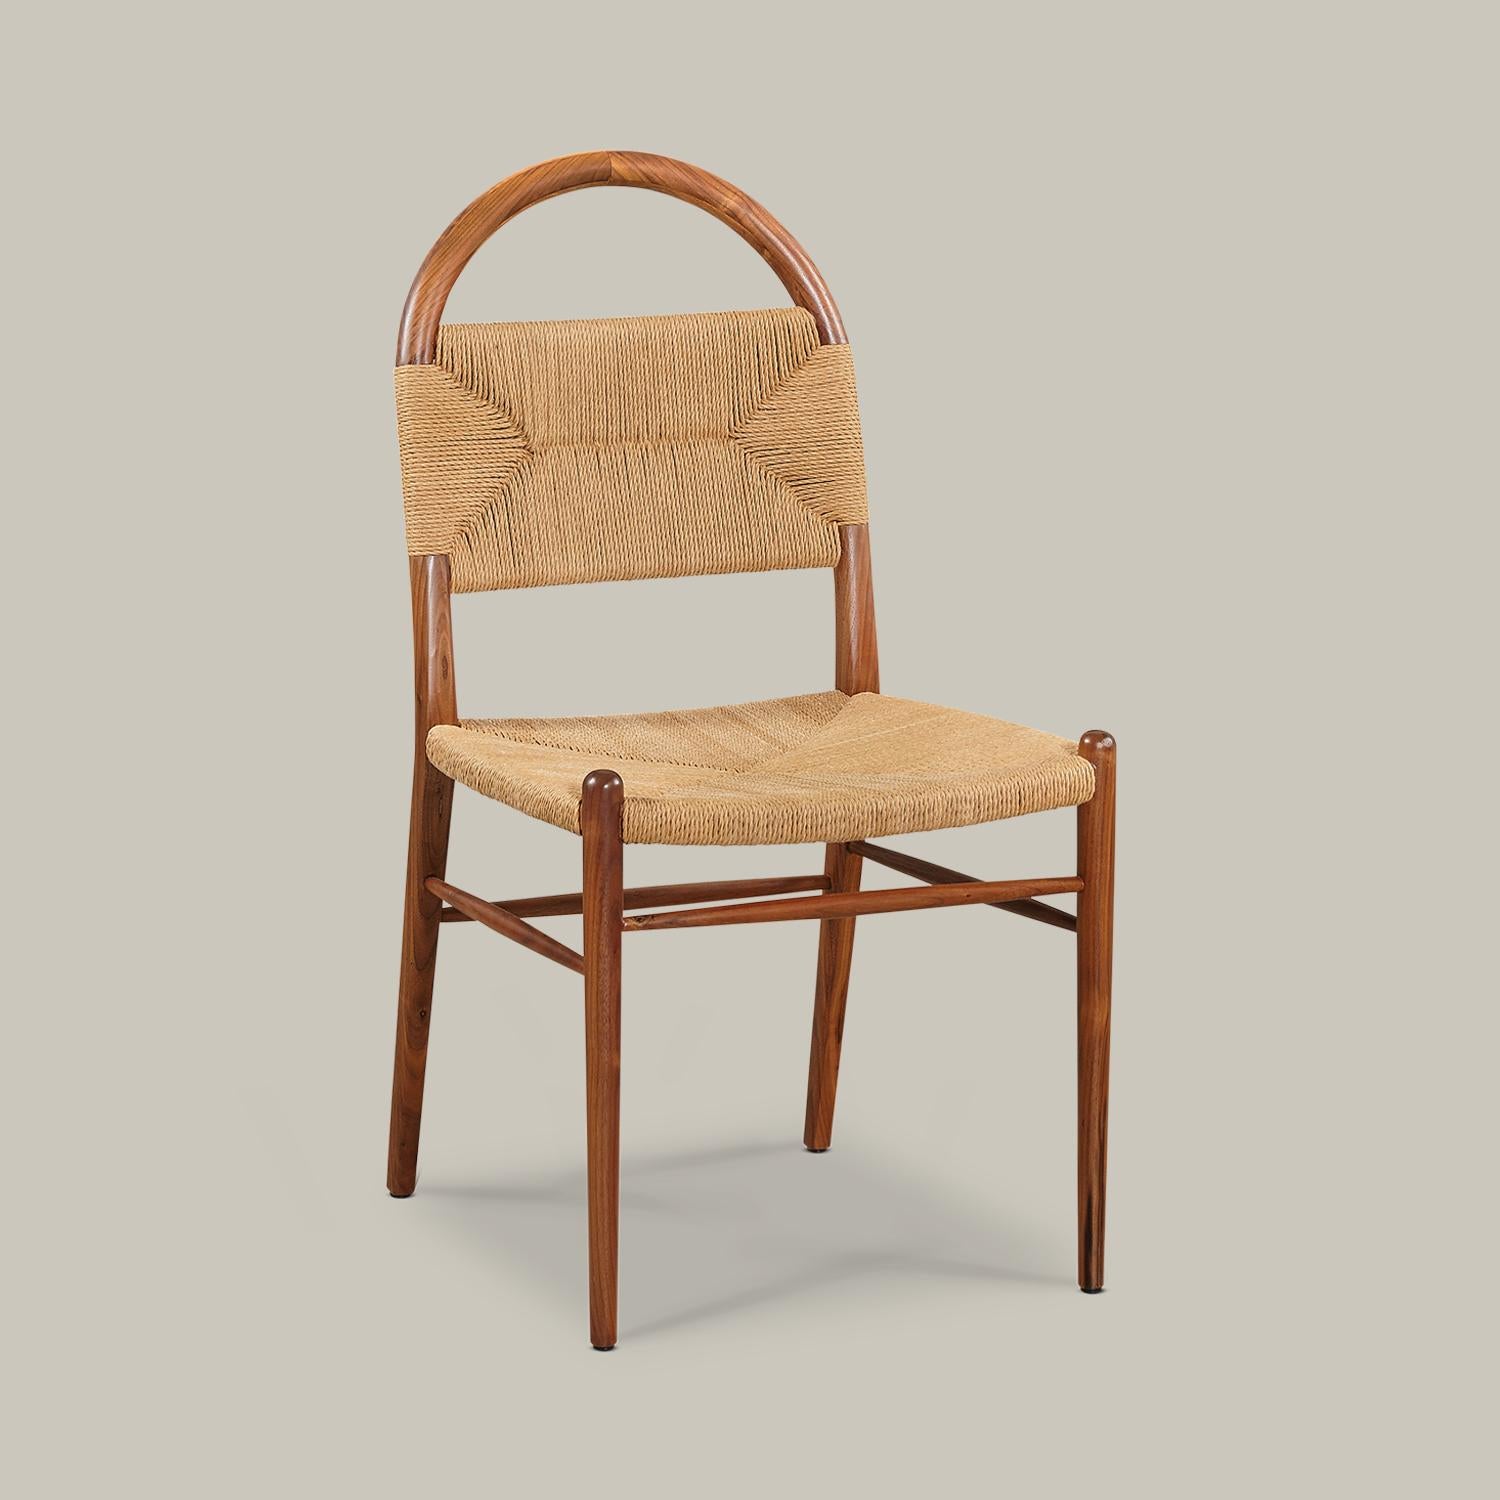 Ein bogenförmiger Massivholzrahmen durchzieht einen geflochtenen Binsenstuhl mit Armlehnen und Rückenlehne und formt so diesen wohlproportionierten, minimalistischen Stuhl für den Essbereich, den Schreibtisch, die Frisierkommode oder als Akzent in